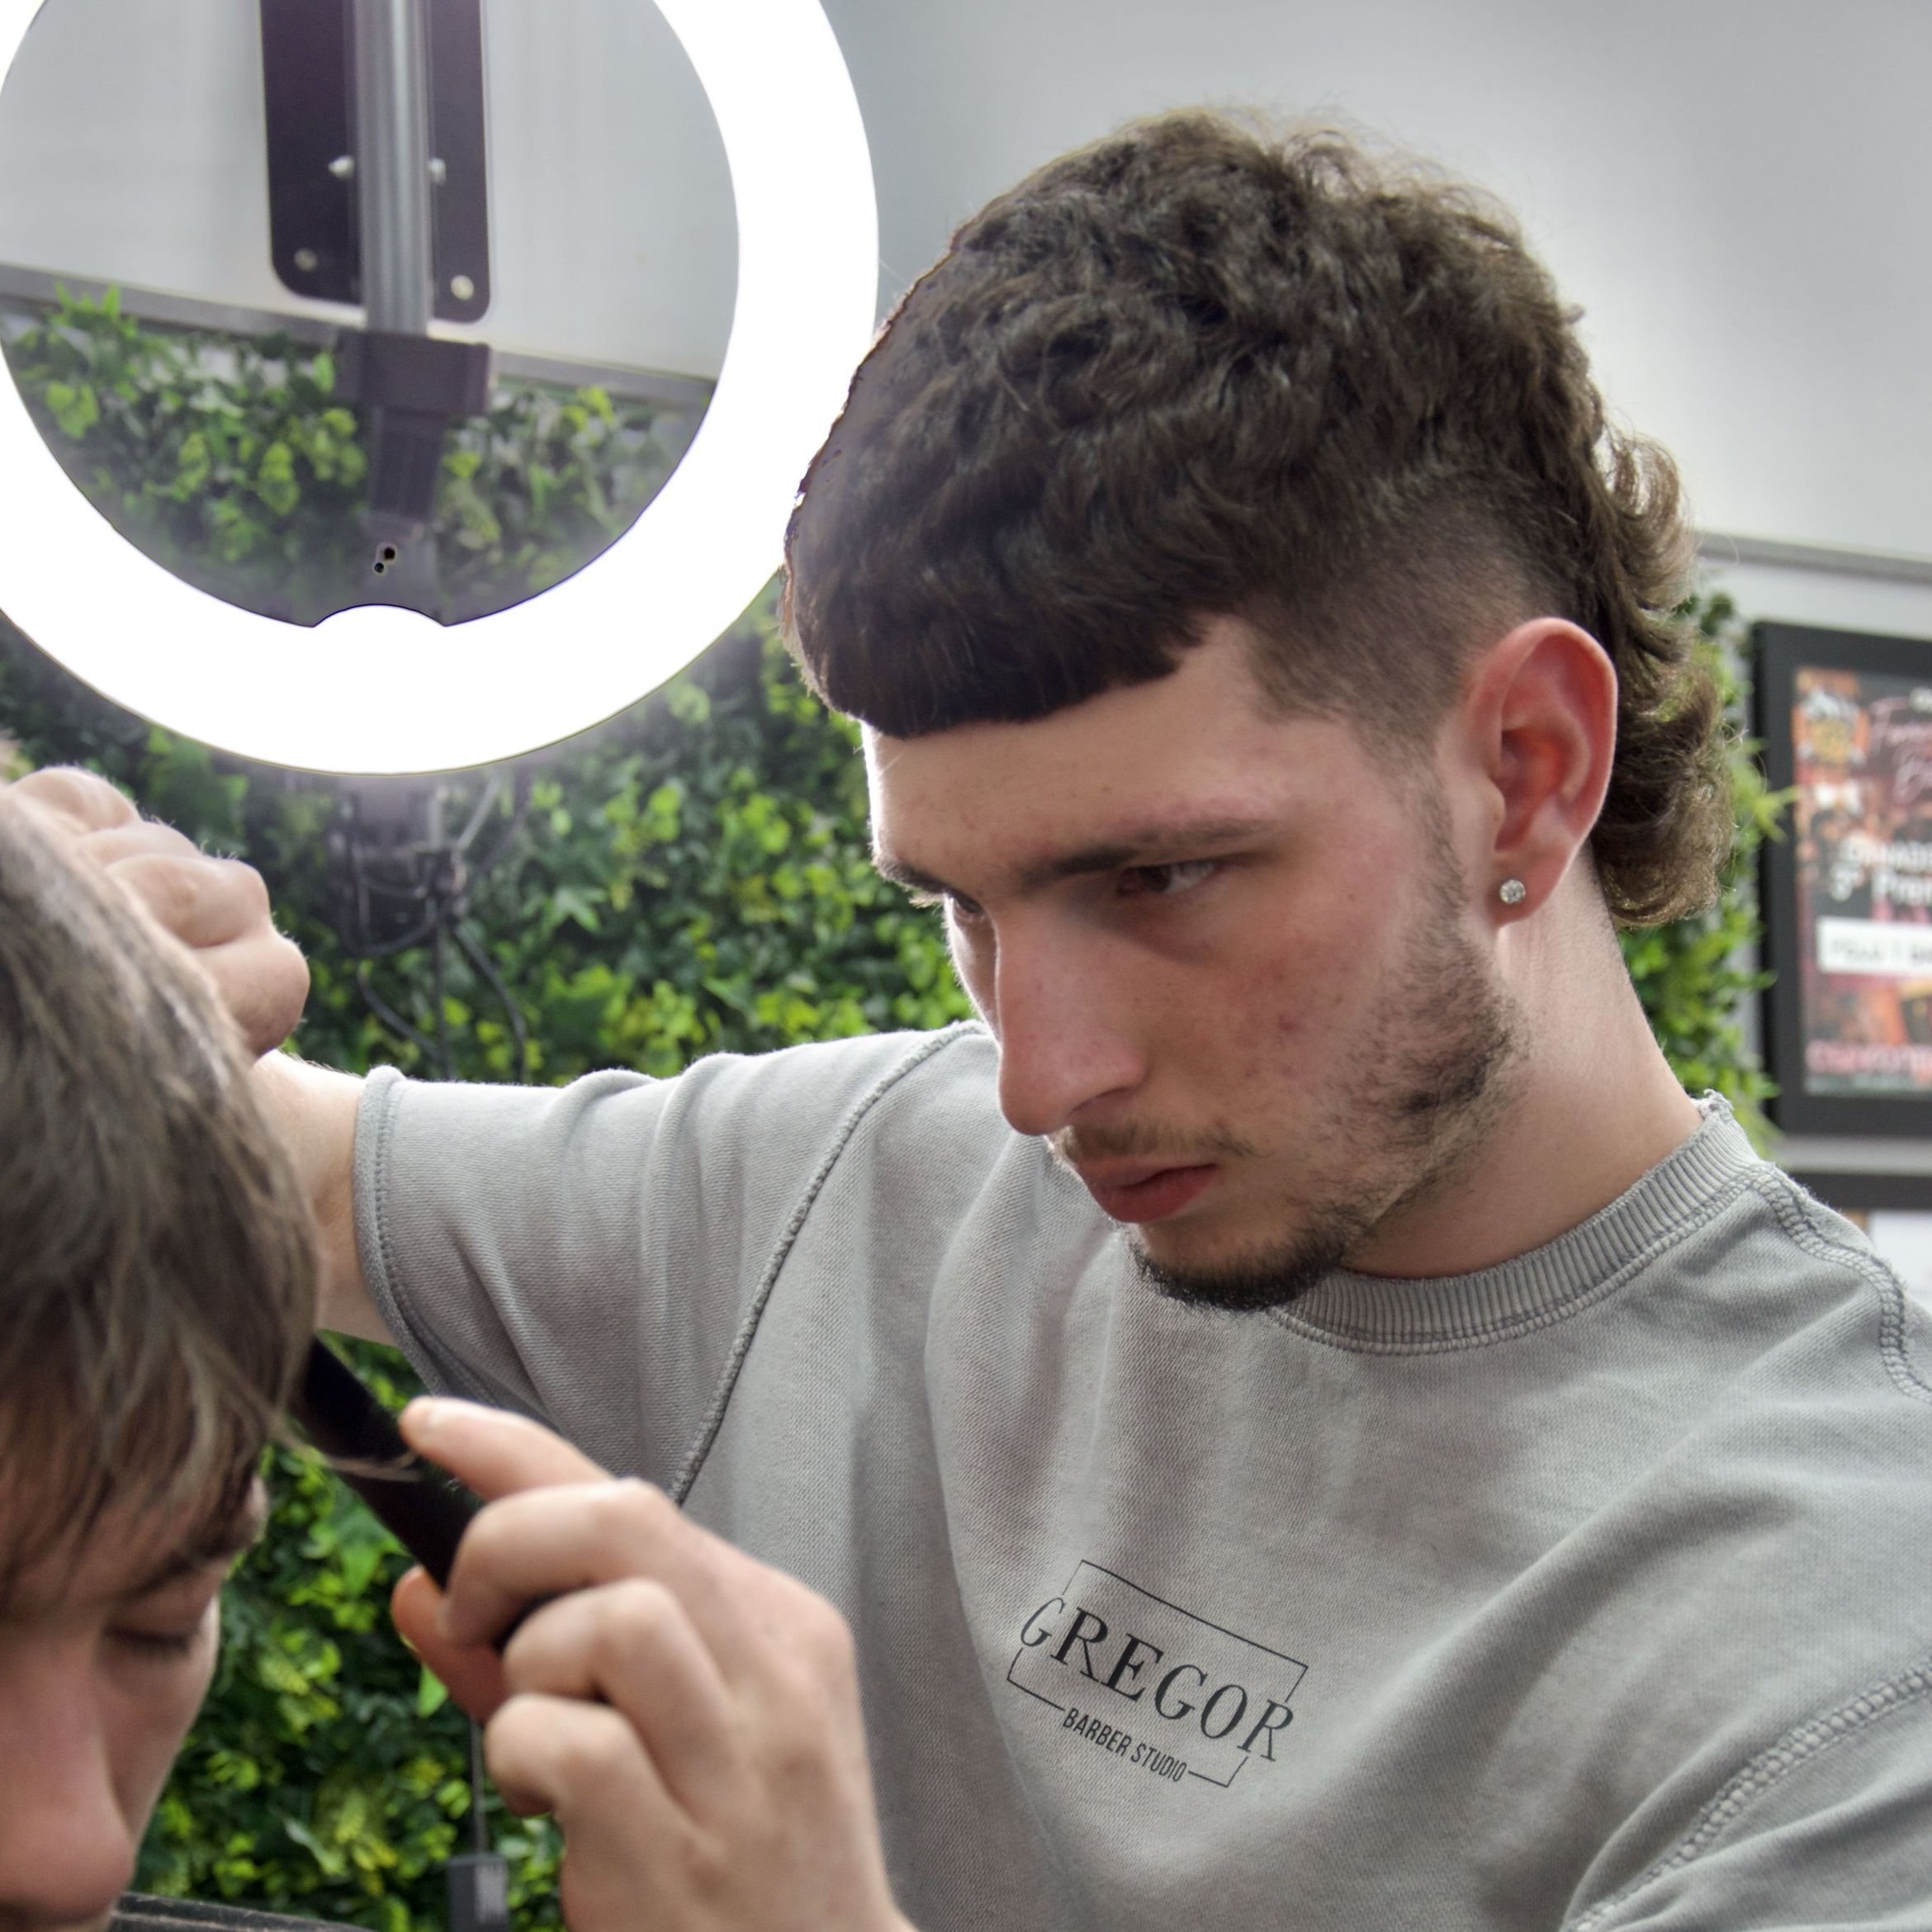 José barber - Gregor barber studio